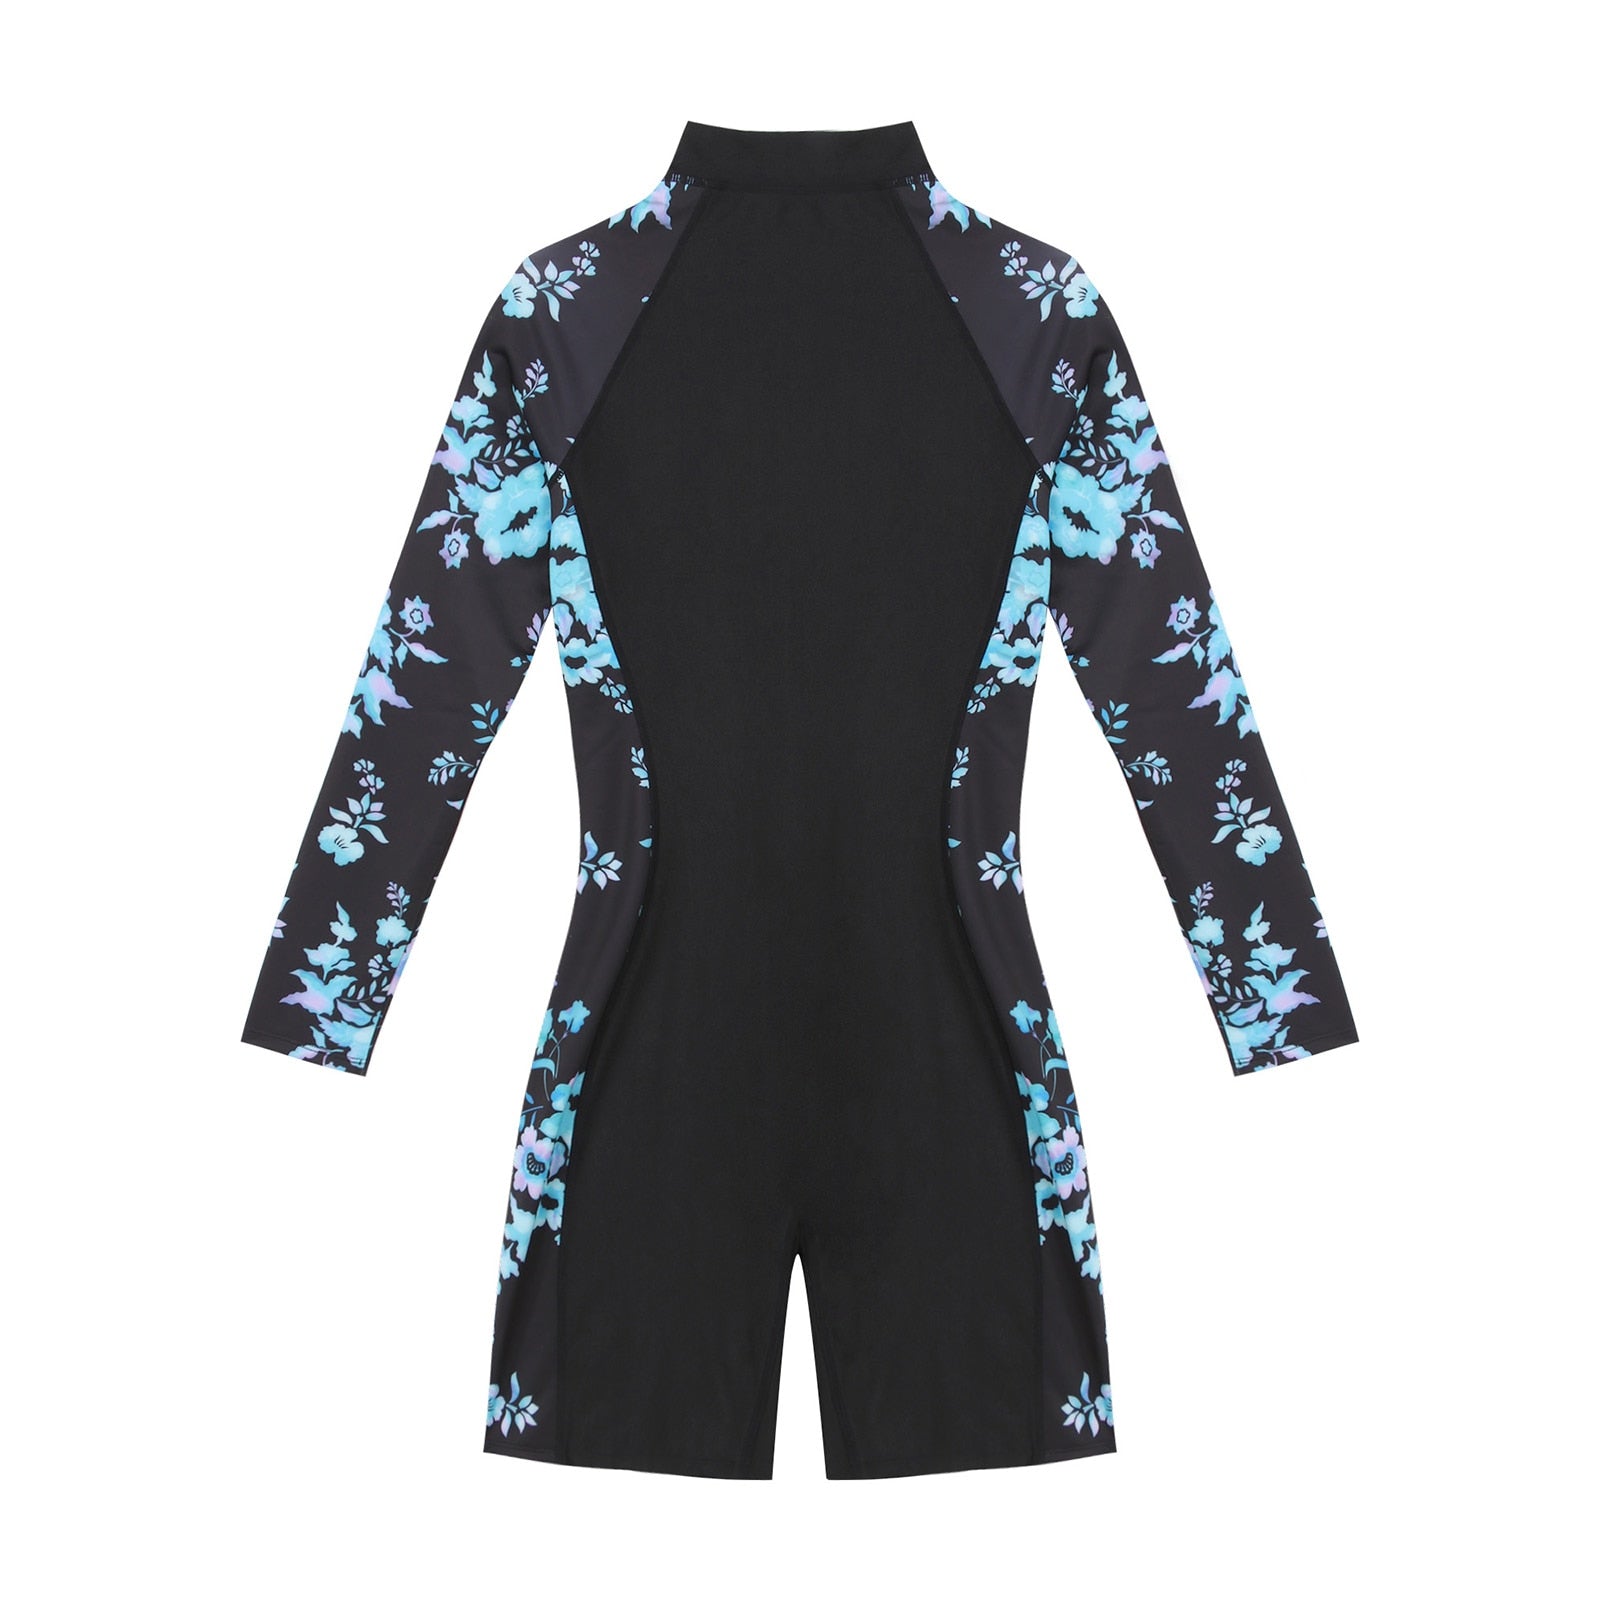 Women's Swimwear Rash Guard Long Sleeve Swimsuit Front Zipper One-piece Jumpsuit Surfing Rashguard Beachwear Swimming Suit